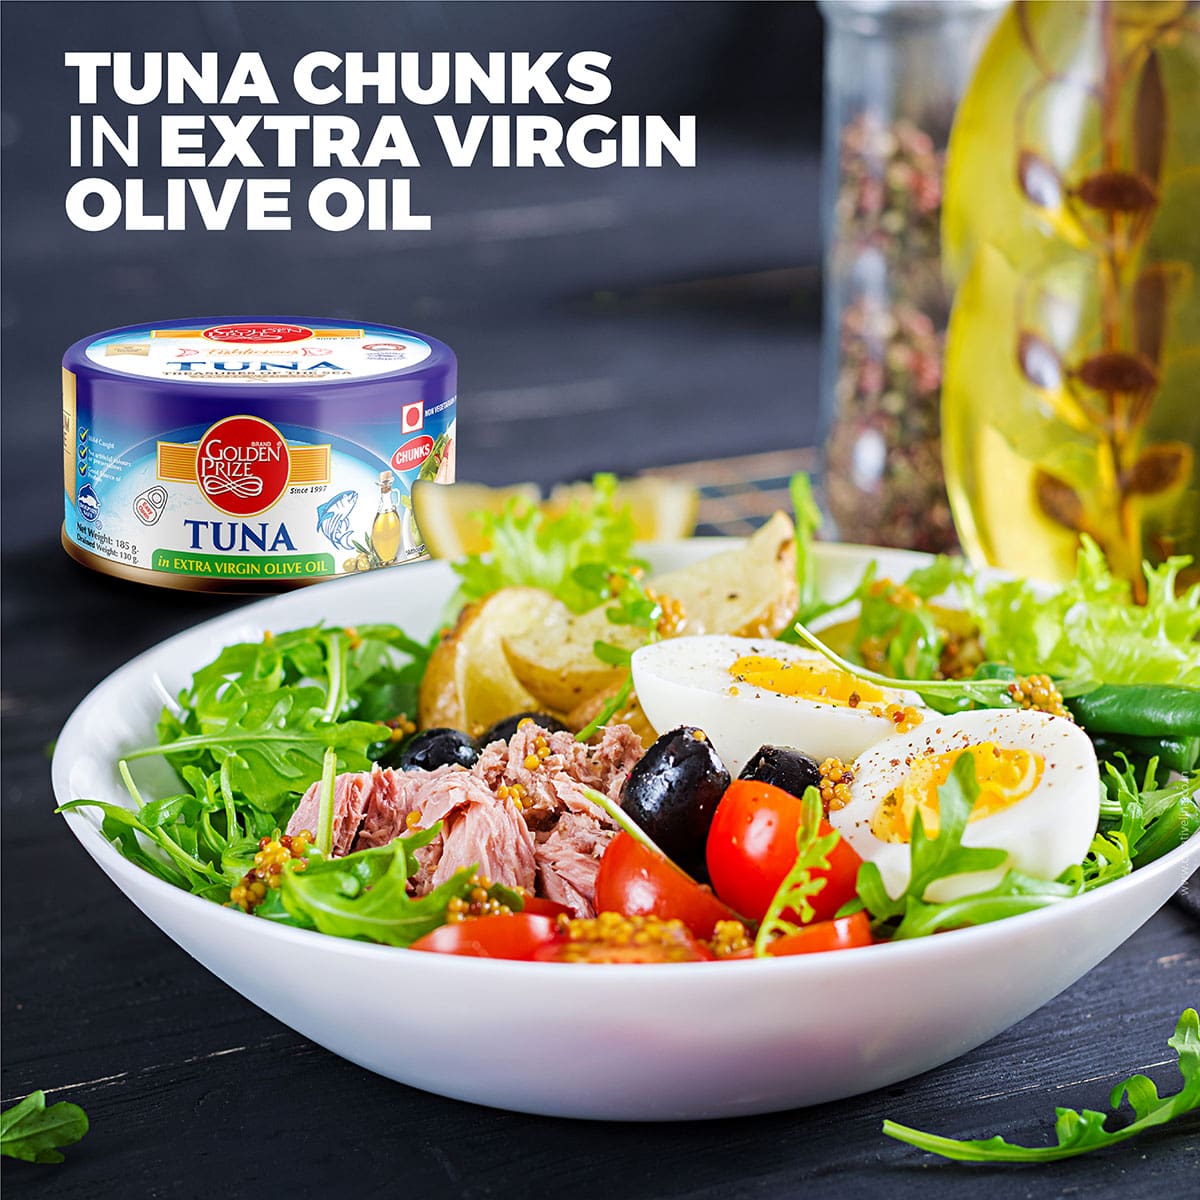 Tuna chunks in olive oil